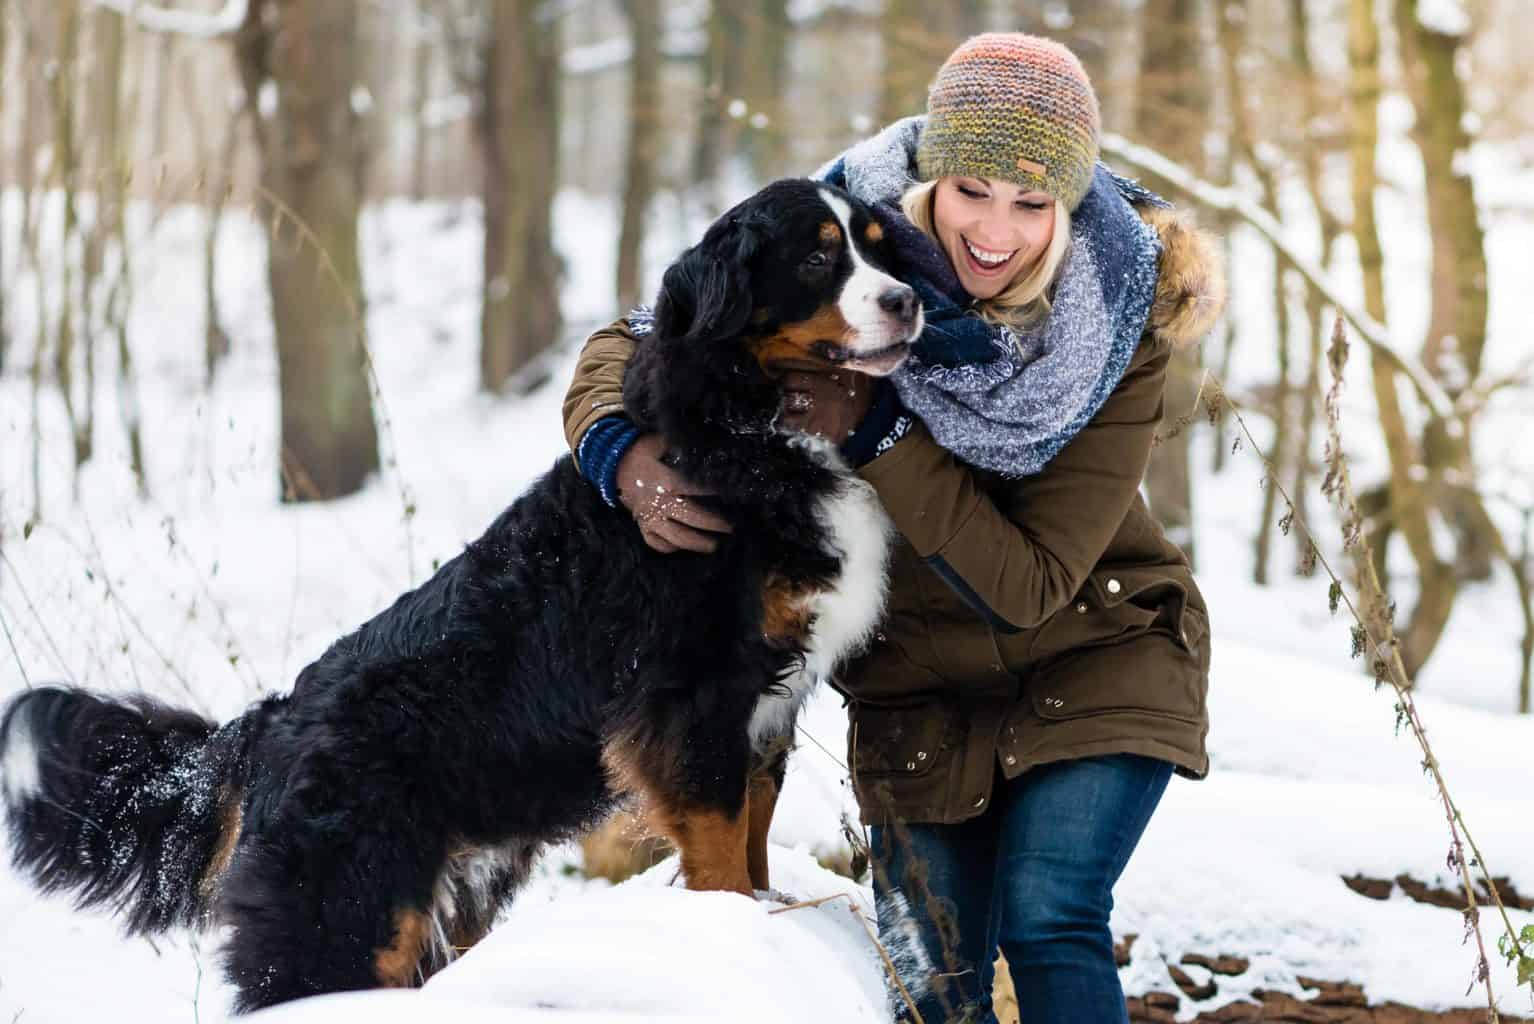 Woman hugs Bernese Mountain Dog in snowy scene.